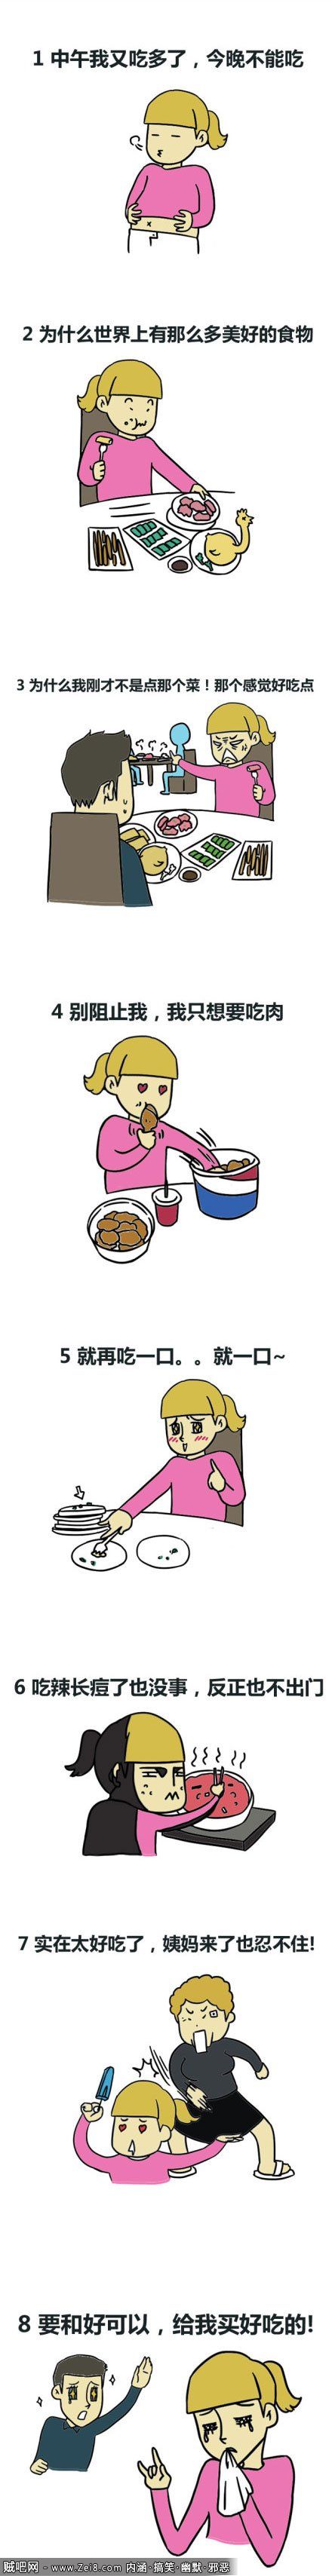 【韩国搞笑漫画】女吃货